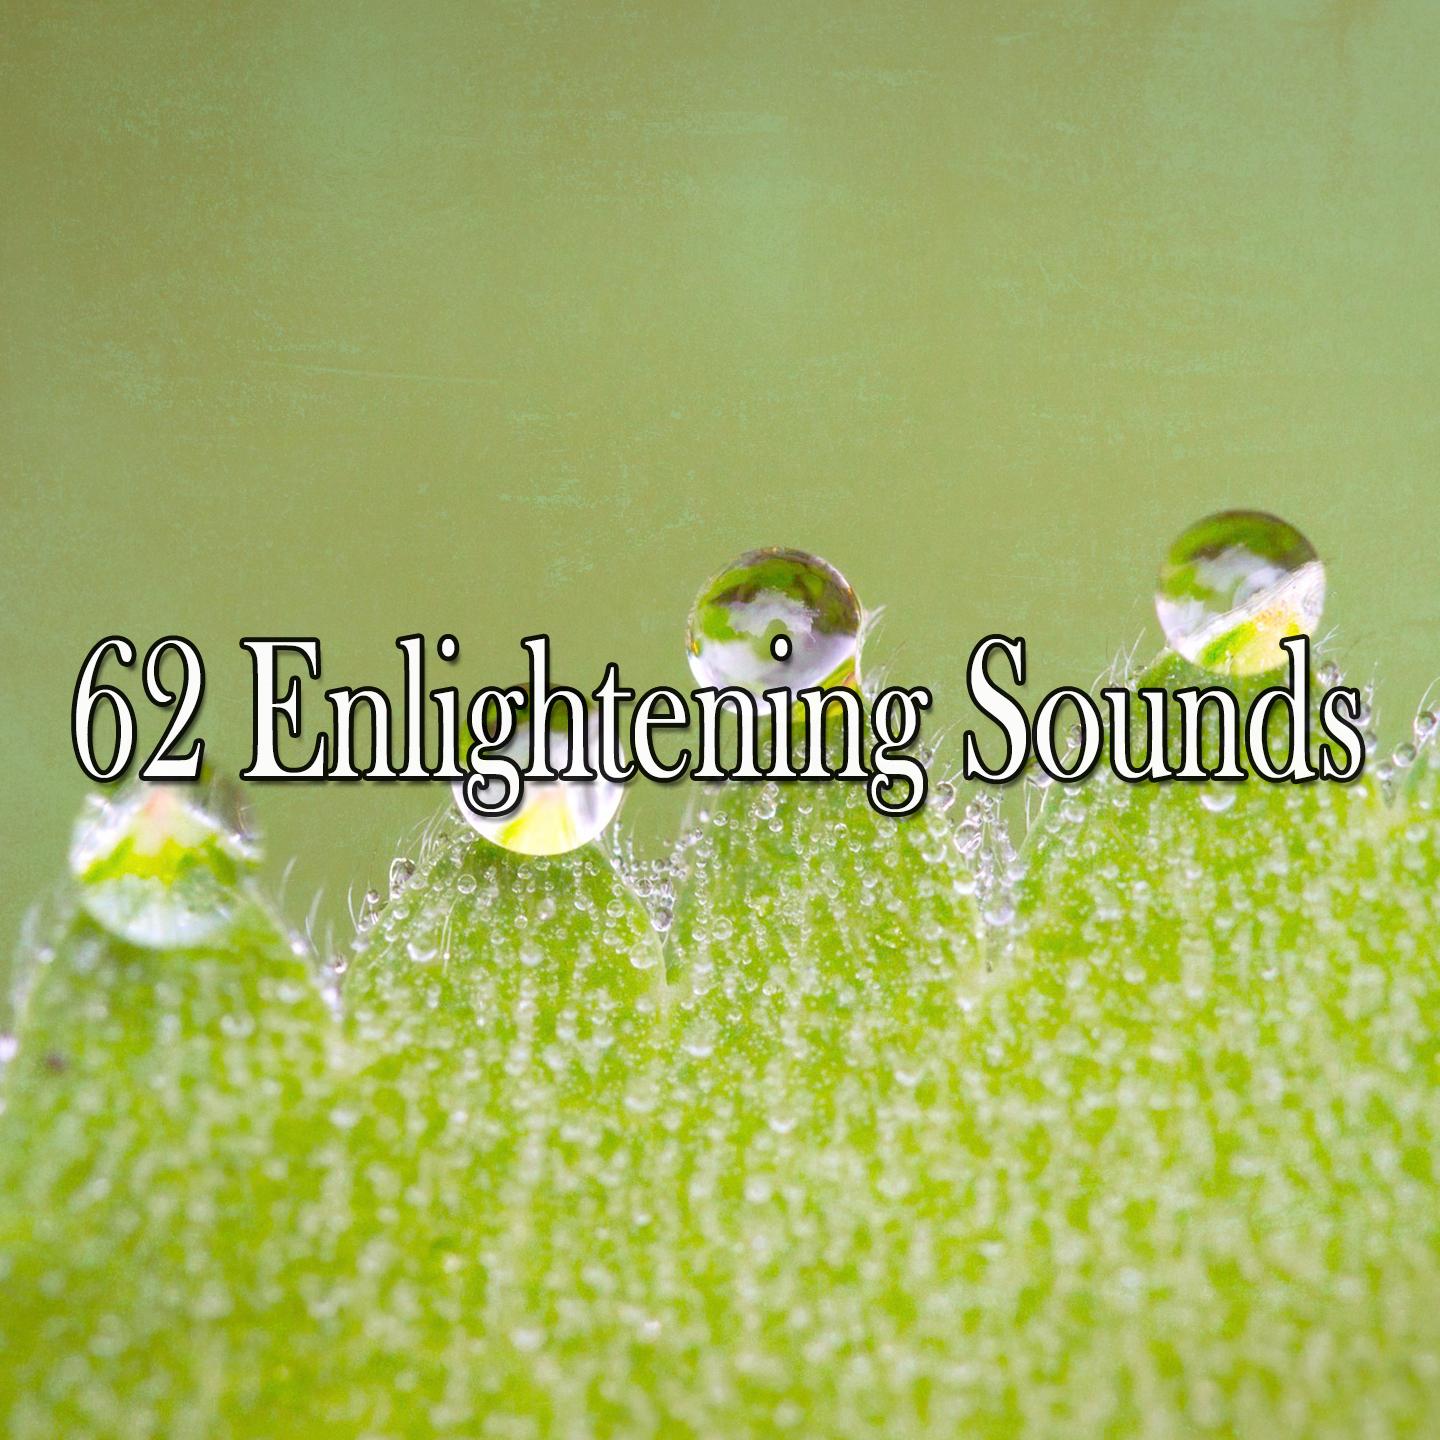 62 Enlightening Sounds